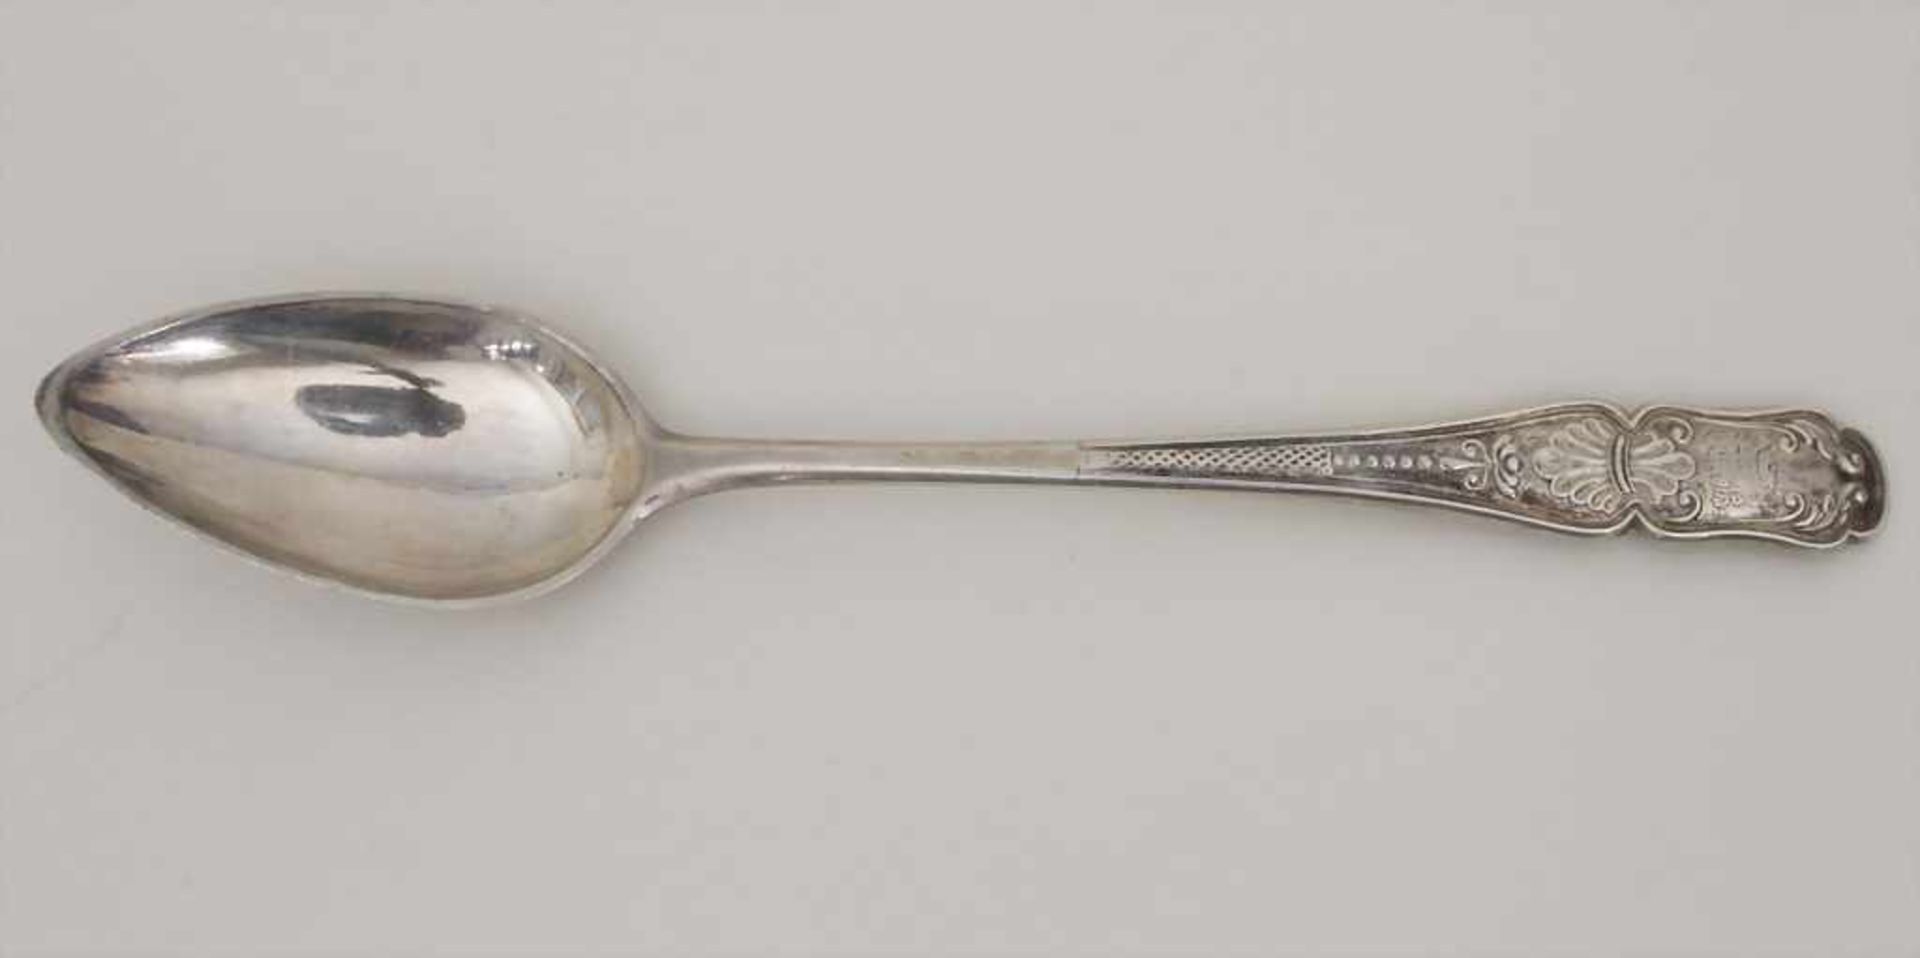 6 Teelöffel / 6 silver tea spoons, um 1800Material: Silber, 12 Lot, Punzierung: Beschaumarke, - Image 3 of 6